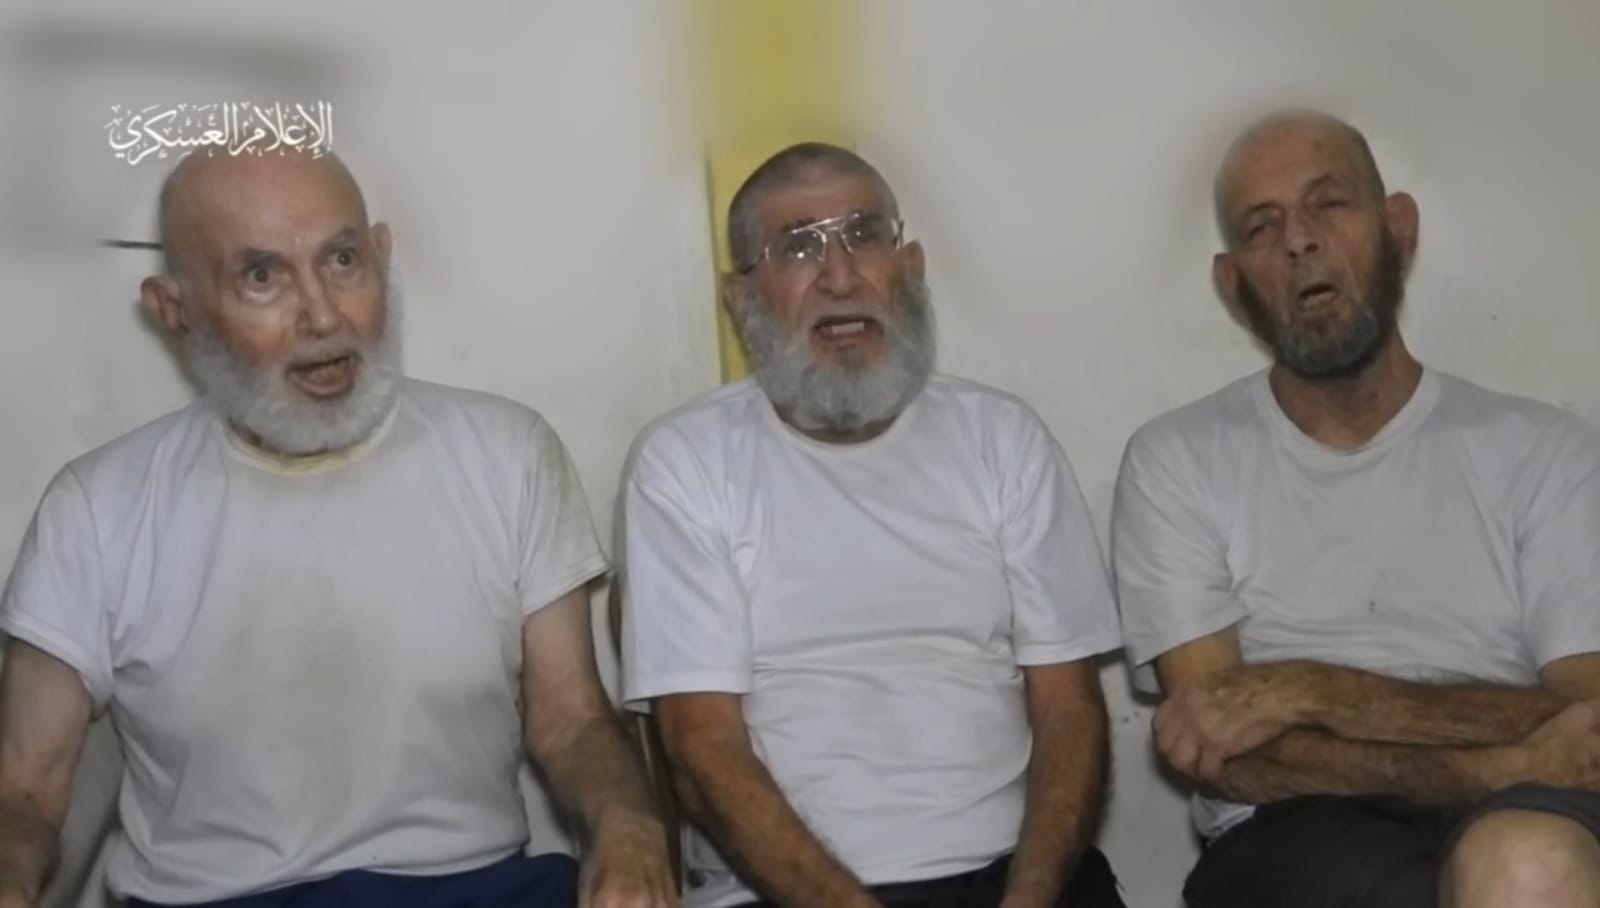 Brigade Al-Qassam Rilis Video Sandera Warga Israel, Minta Dibebaskan, Gak Mau Tua Jadi Tahanan